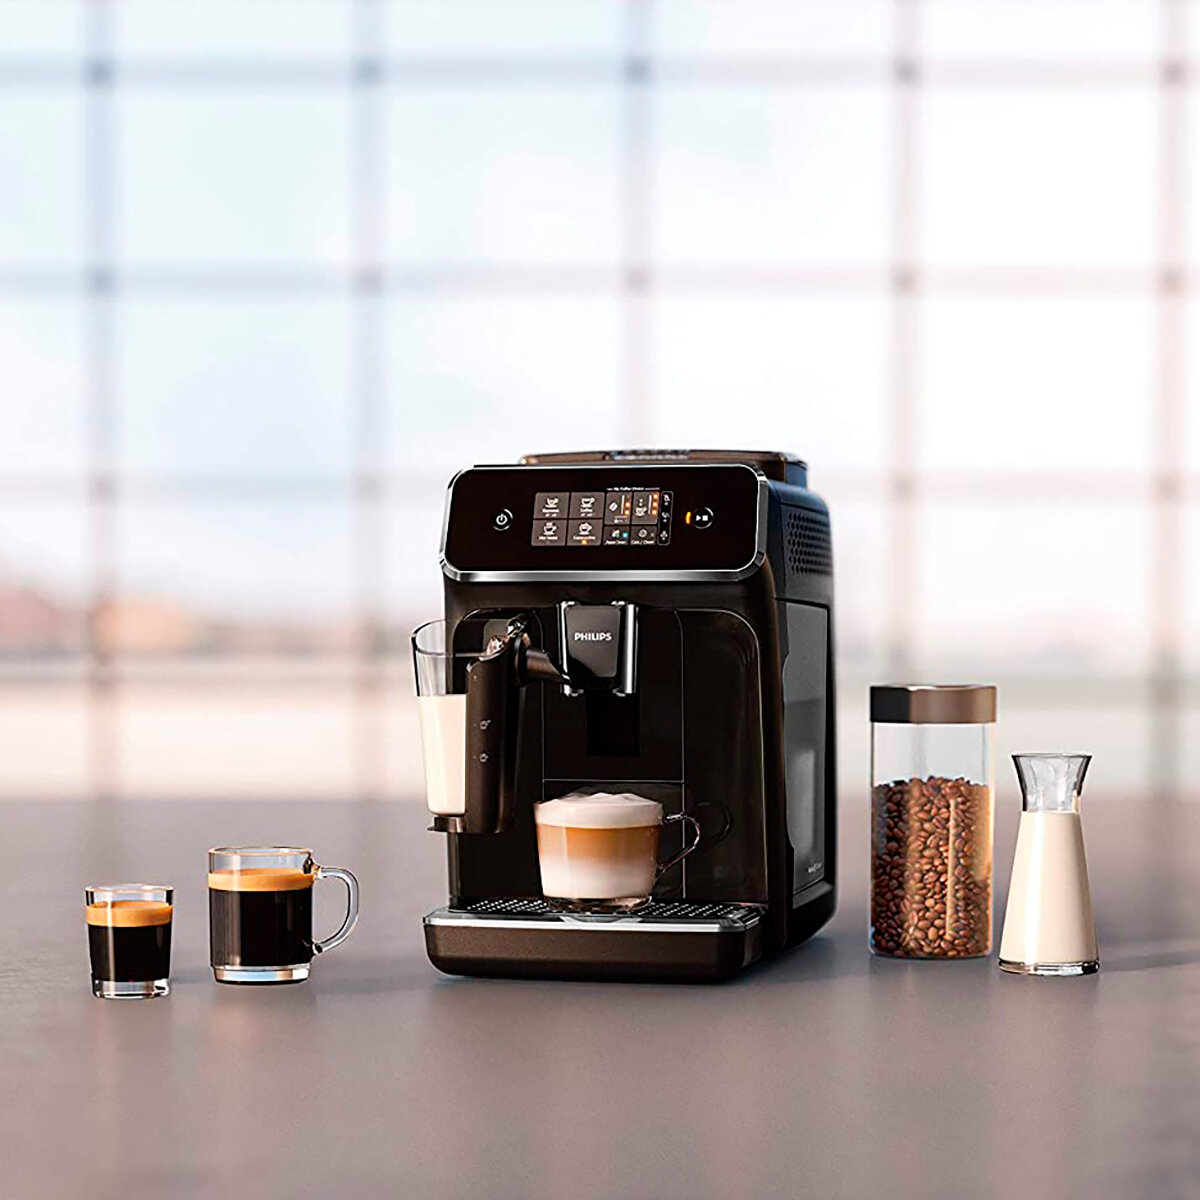 Philips tiene rebajada en  esta cafetera superautomática ideal para  obtener lattes sencillos y café de calidad al instante